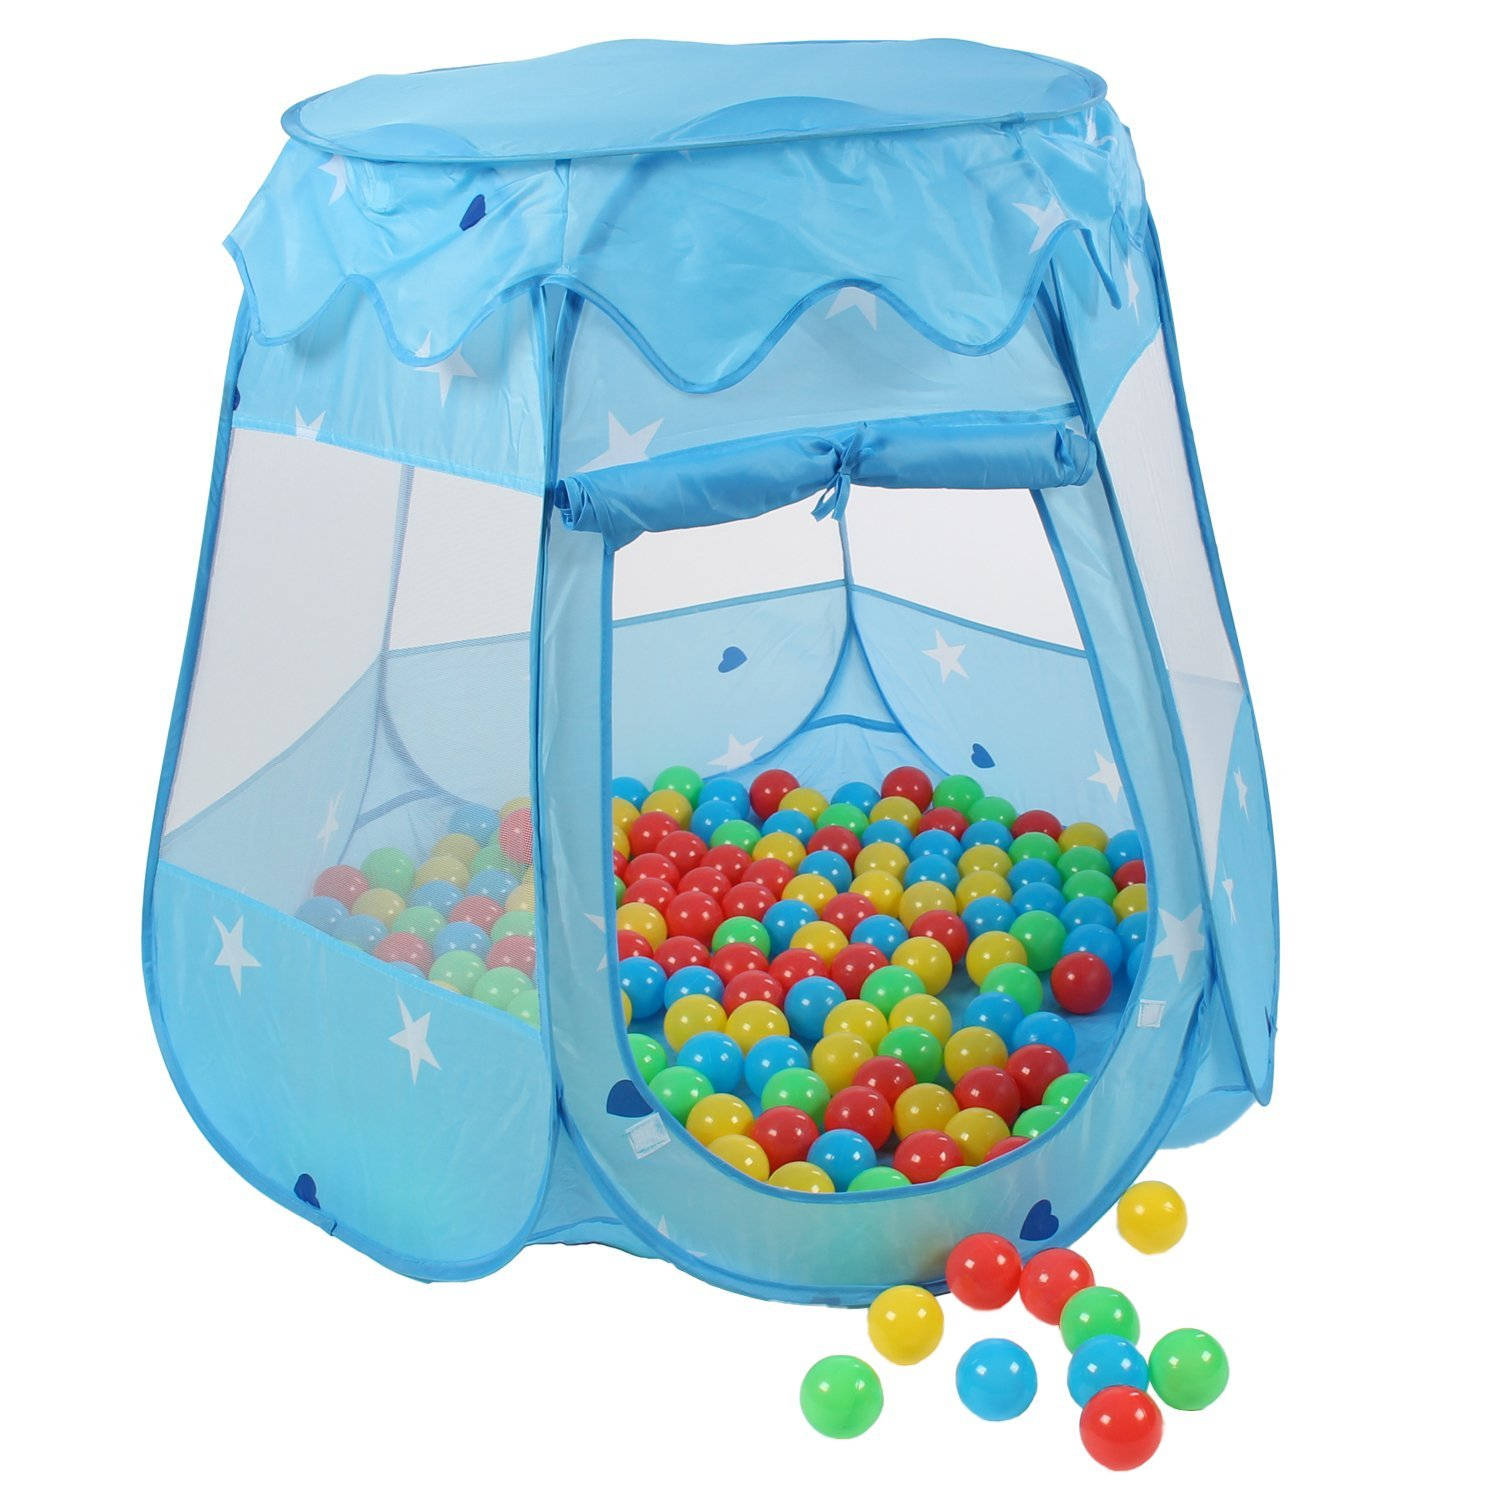 Kinderspeeltent met 100 ballen voor binnen en buiten inclusief draagtas Blauw